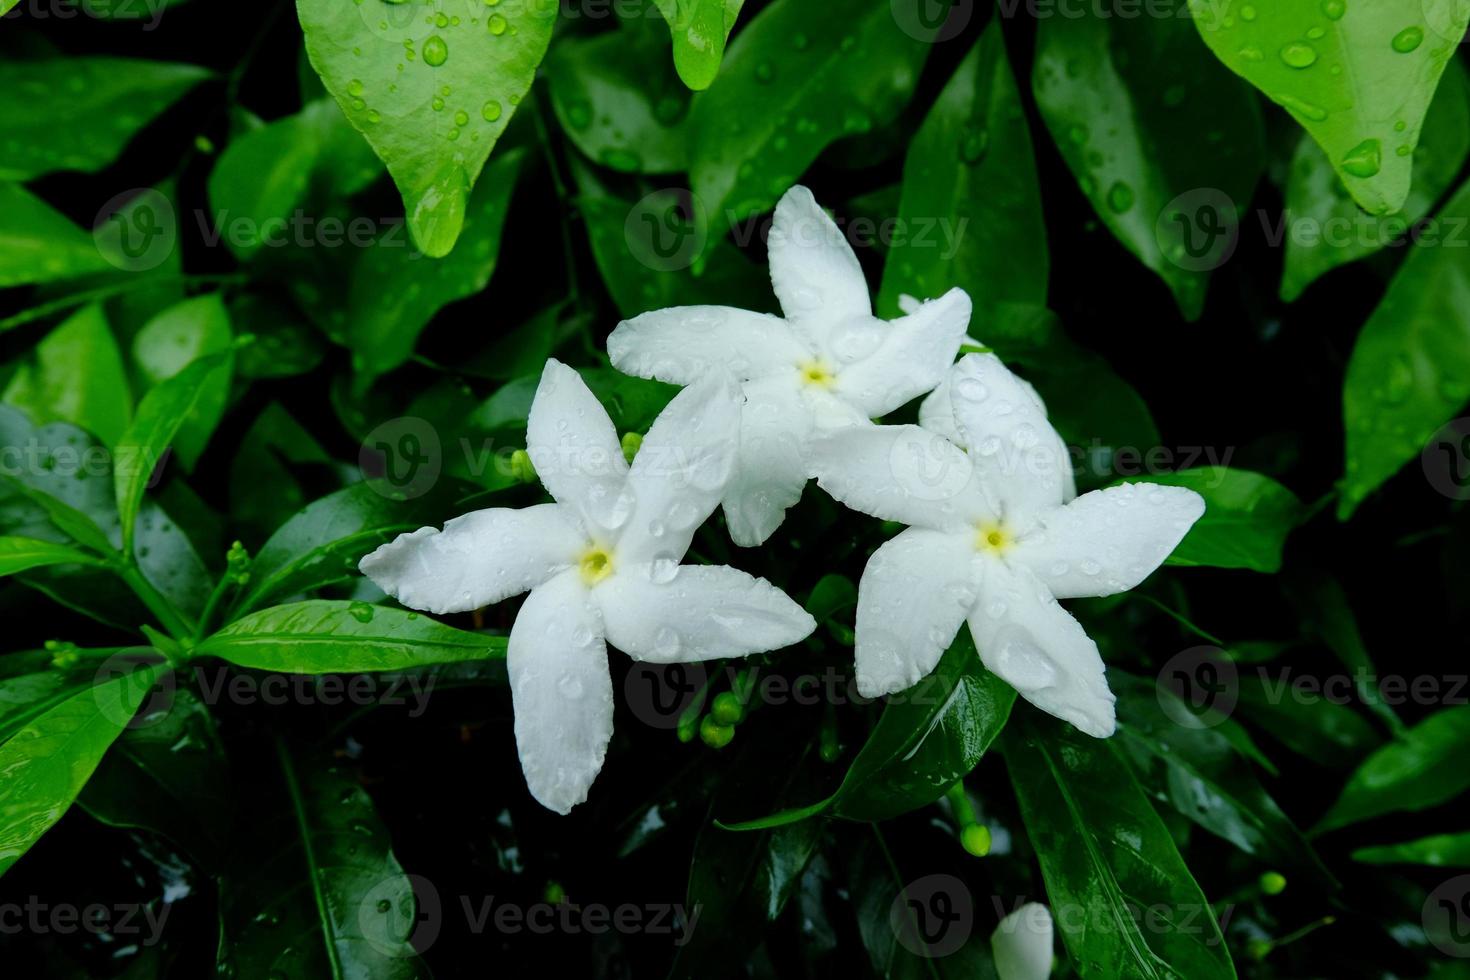 fiori di gelsomino crespo bianco con gocce di pioggia, gelsomino crespo bianco con rugiada, fiori e foglie bianchi con goccioline d'acqua sulle foglie foto